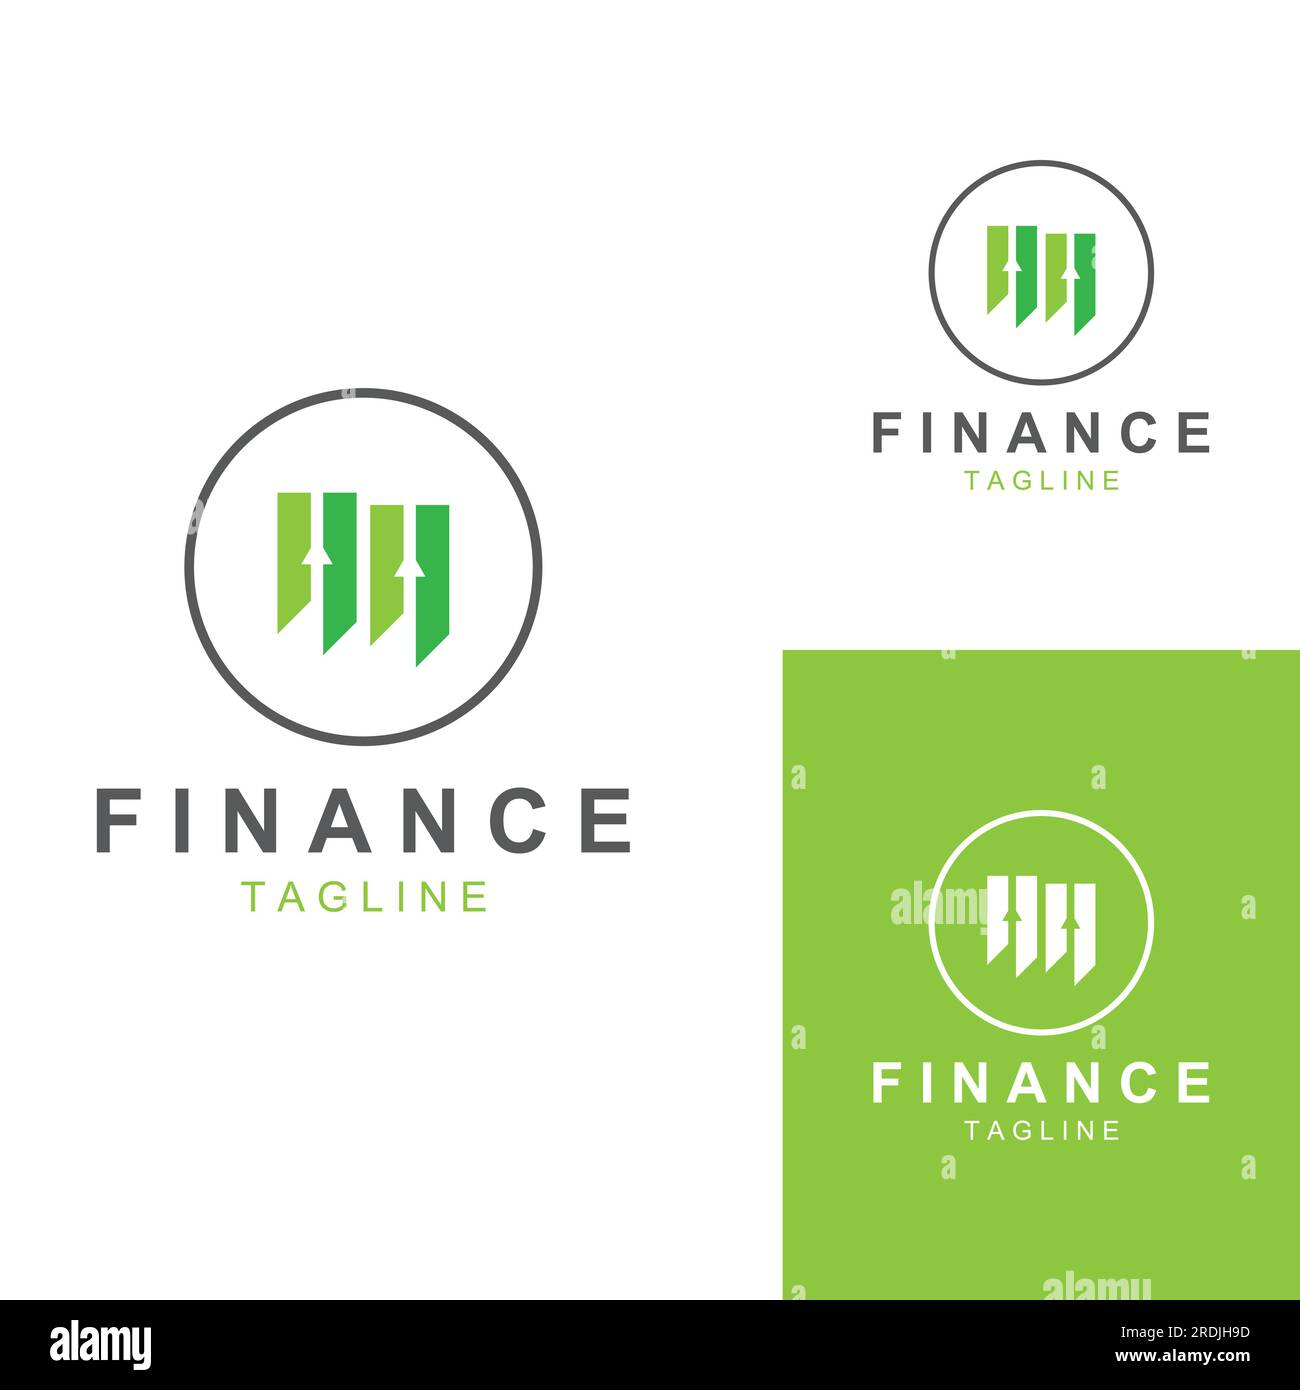 Logo für Finanzunternehmen oder Finanzgrafik Logo.Logo für Daten zu Finanzergebnissen.mit Vektorsymbol-Design. Stock Vektor